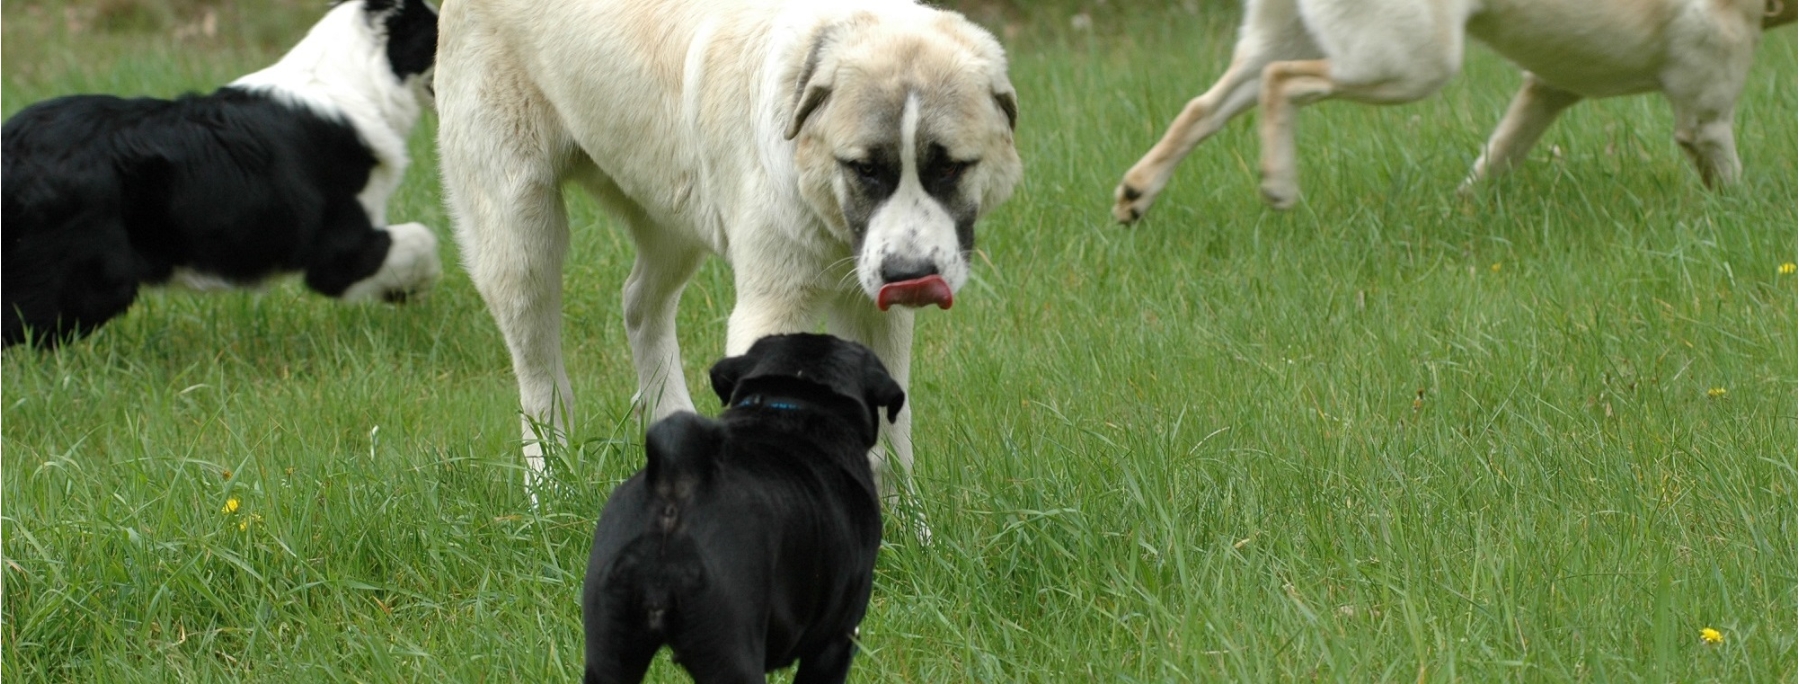 Kaukasischer Schäferhund,  sehr freundlich zu dem Mops. So etwas ist möglich, wenn Hunde unter Kontrolle sind.